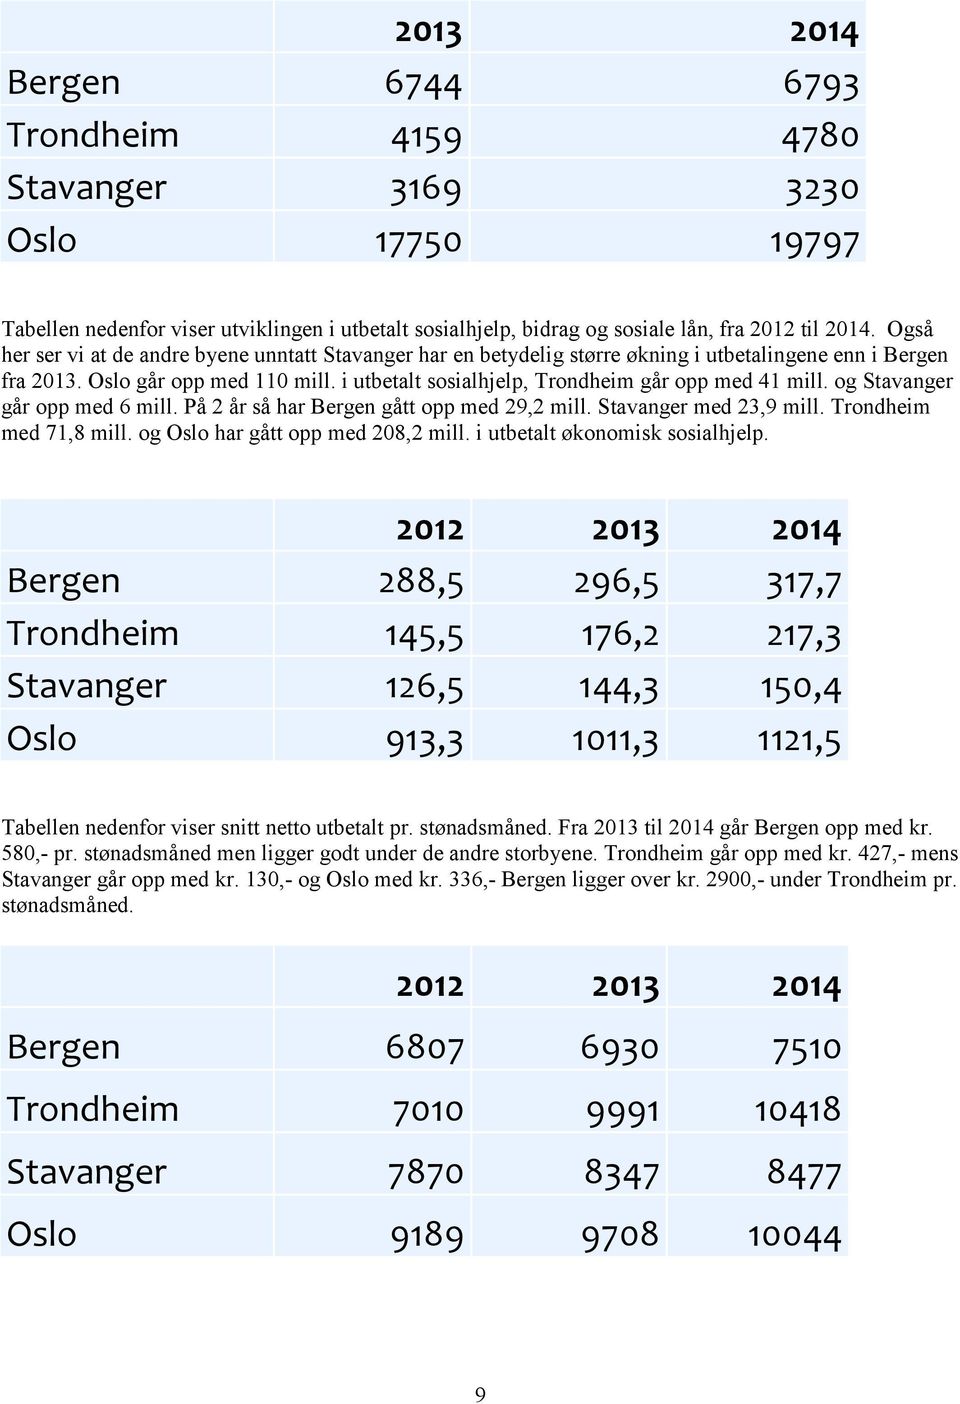 i utbetalt sosialhjelp, Trondheim går opp med 41 mill. og Stavanger går opp med 6 mill. På 2 år så har Bergen gått opp med 29,2 mill. Stavanger med 23,9 mill. Trondheim med 71,8 mill.